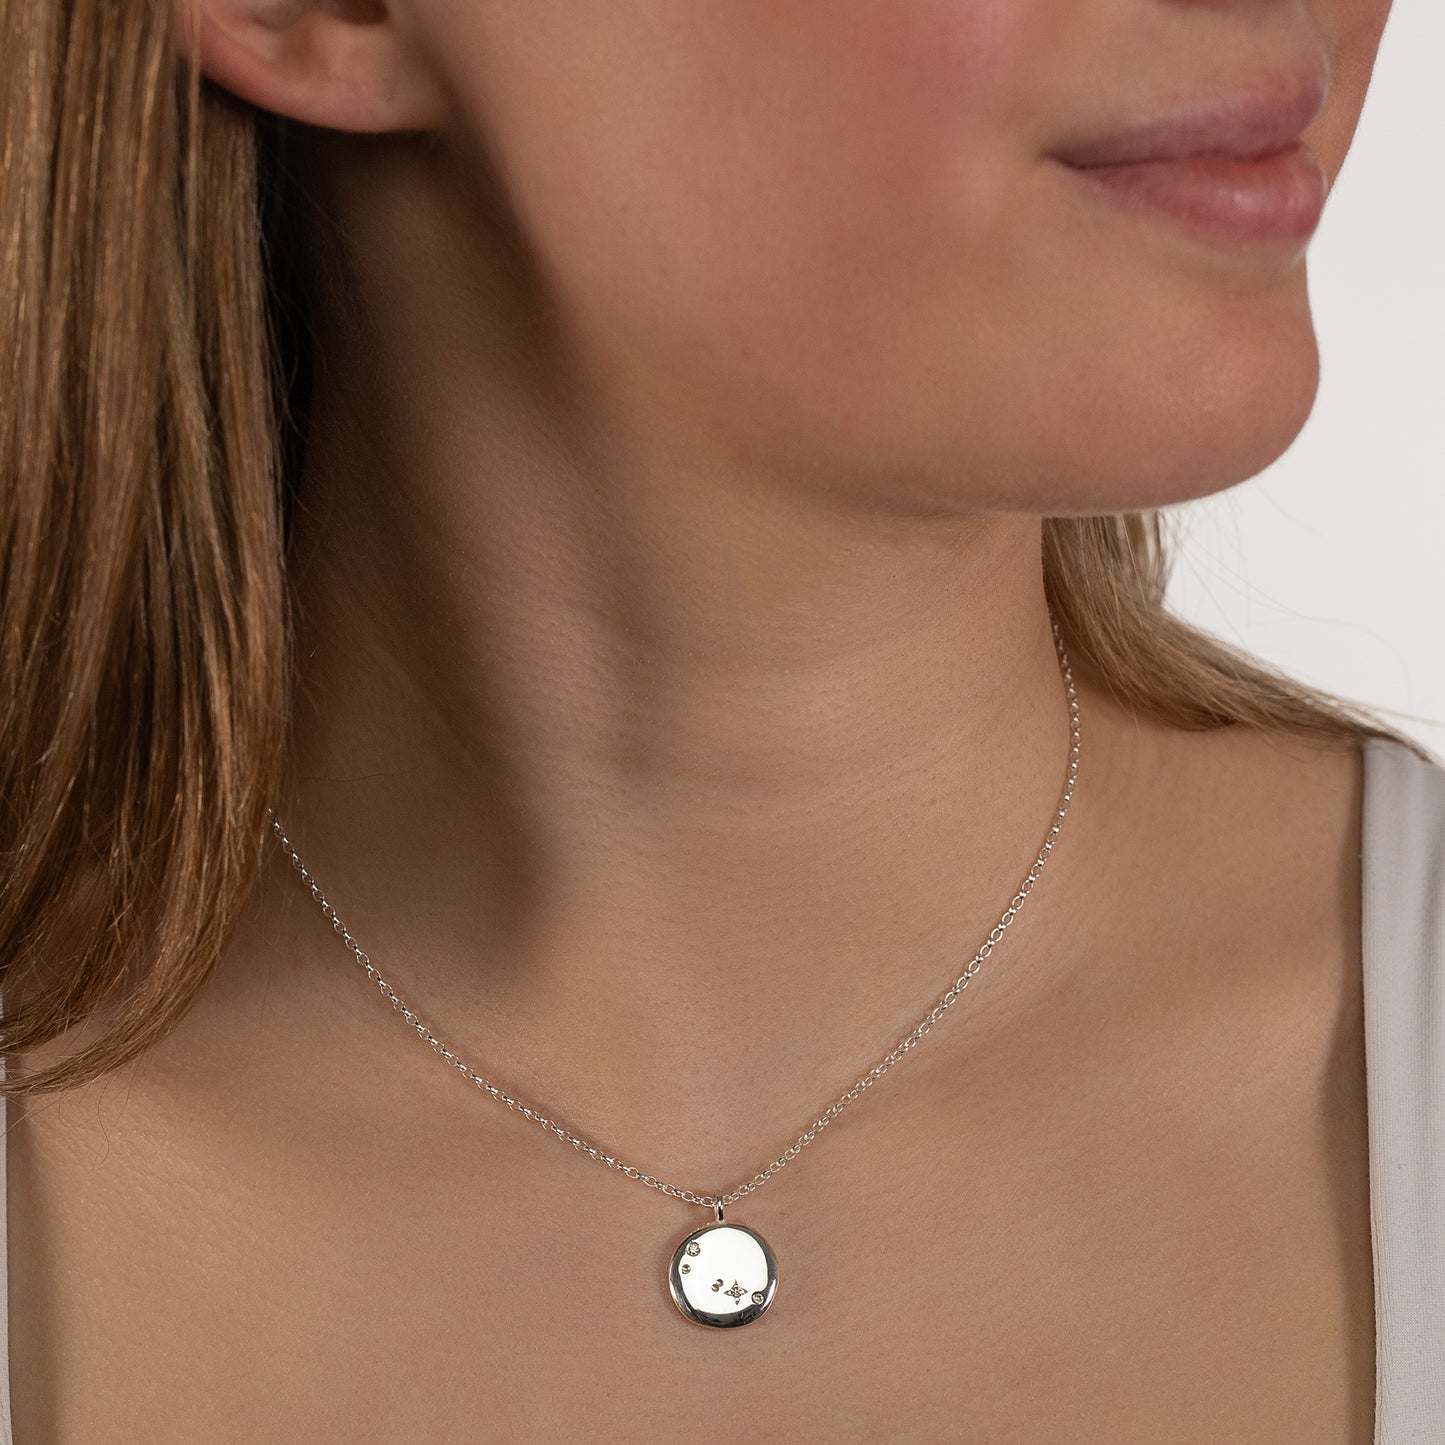 taurus constellation necklace